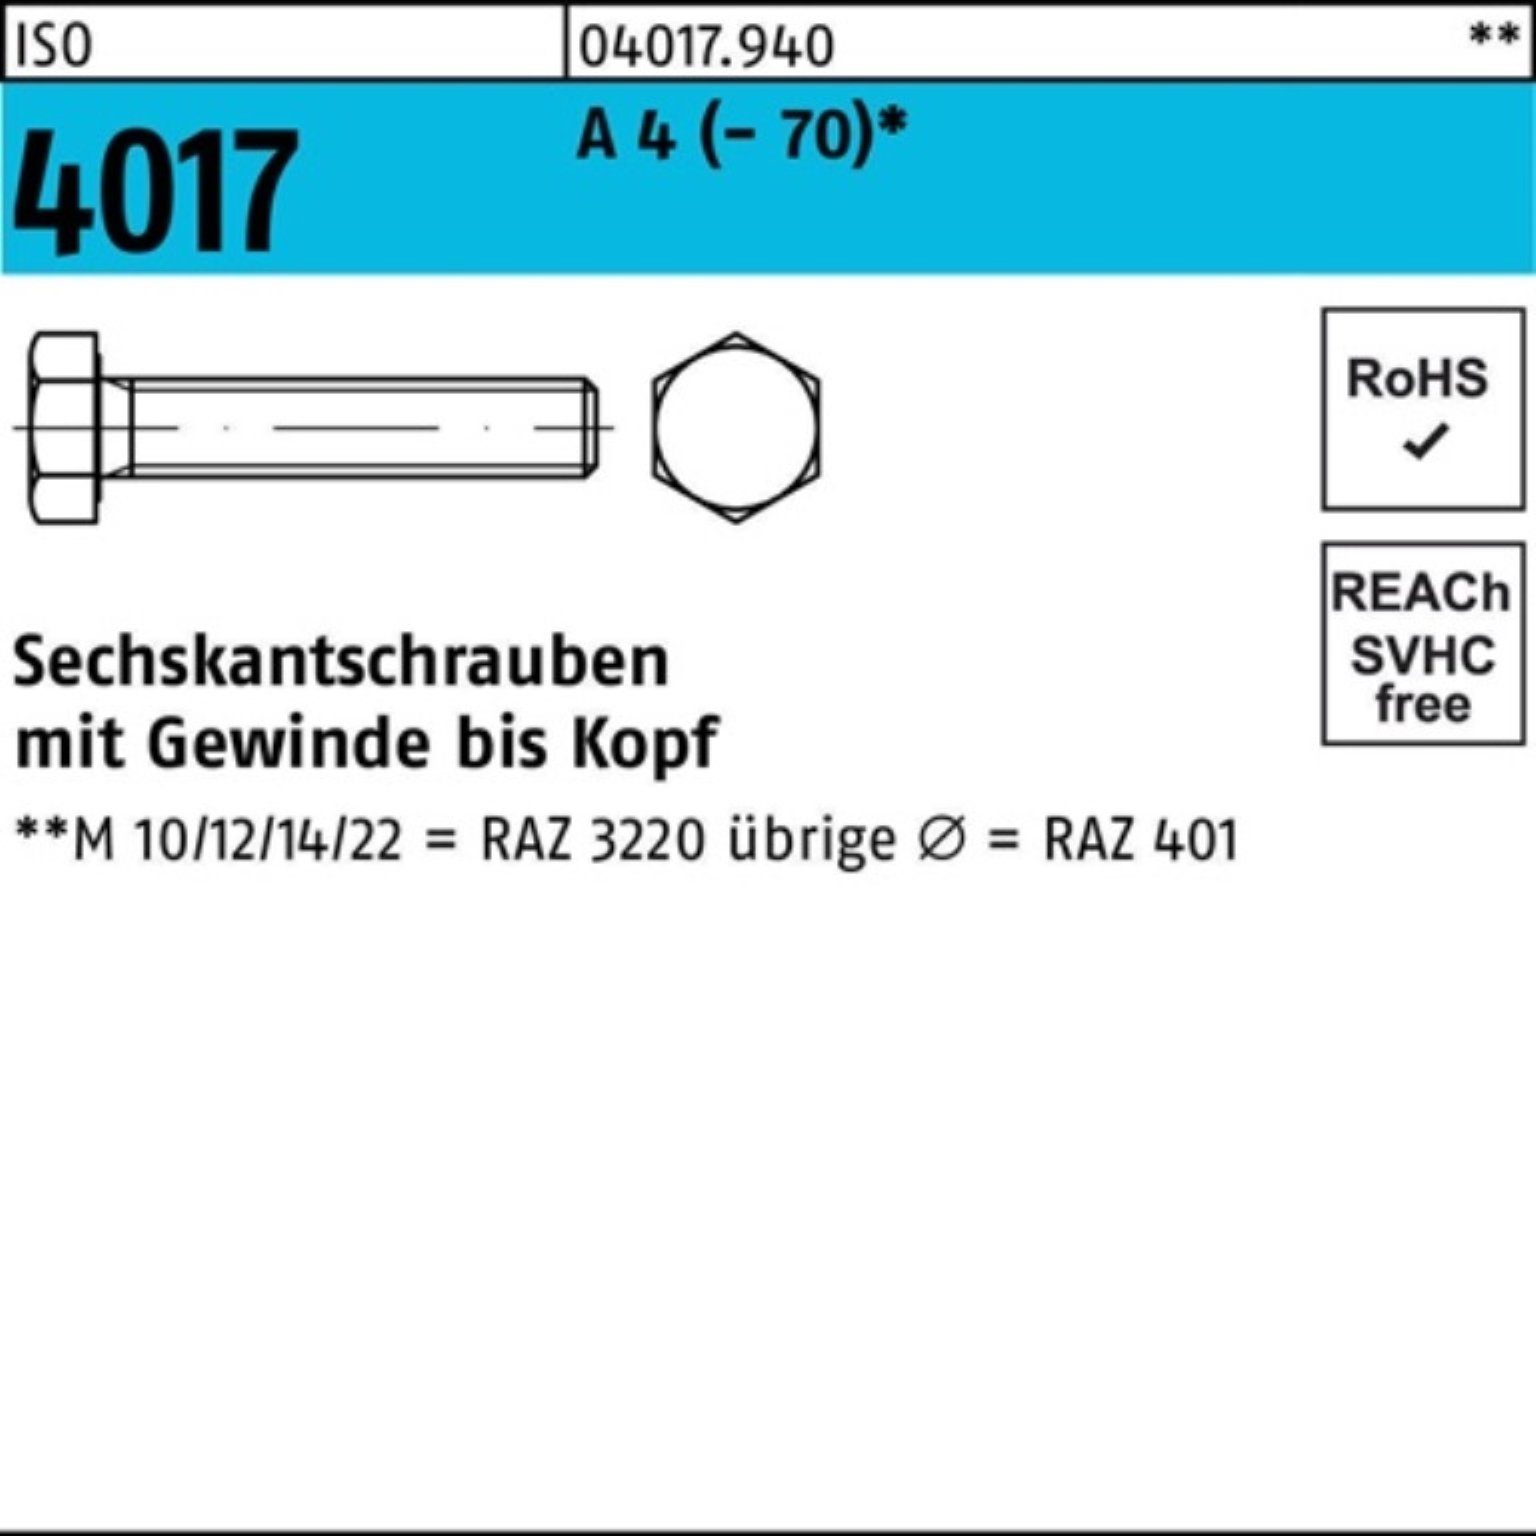 Bufab Sechskantschraube 100er Pack Sechskantschraube ISO 4017 VG M12x 170 A 4 (70) 1 Stück